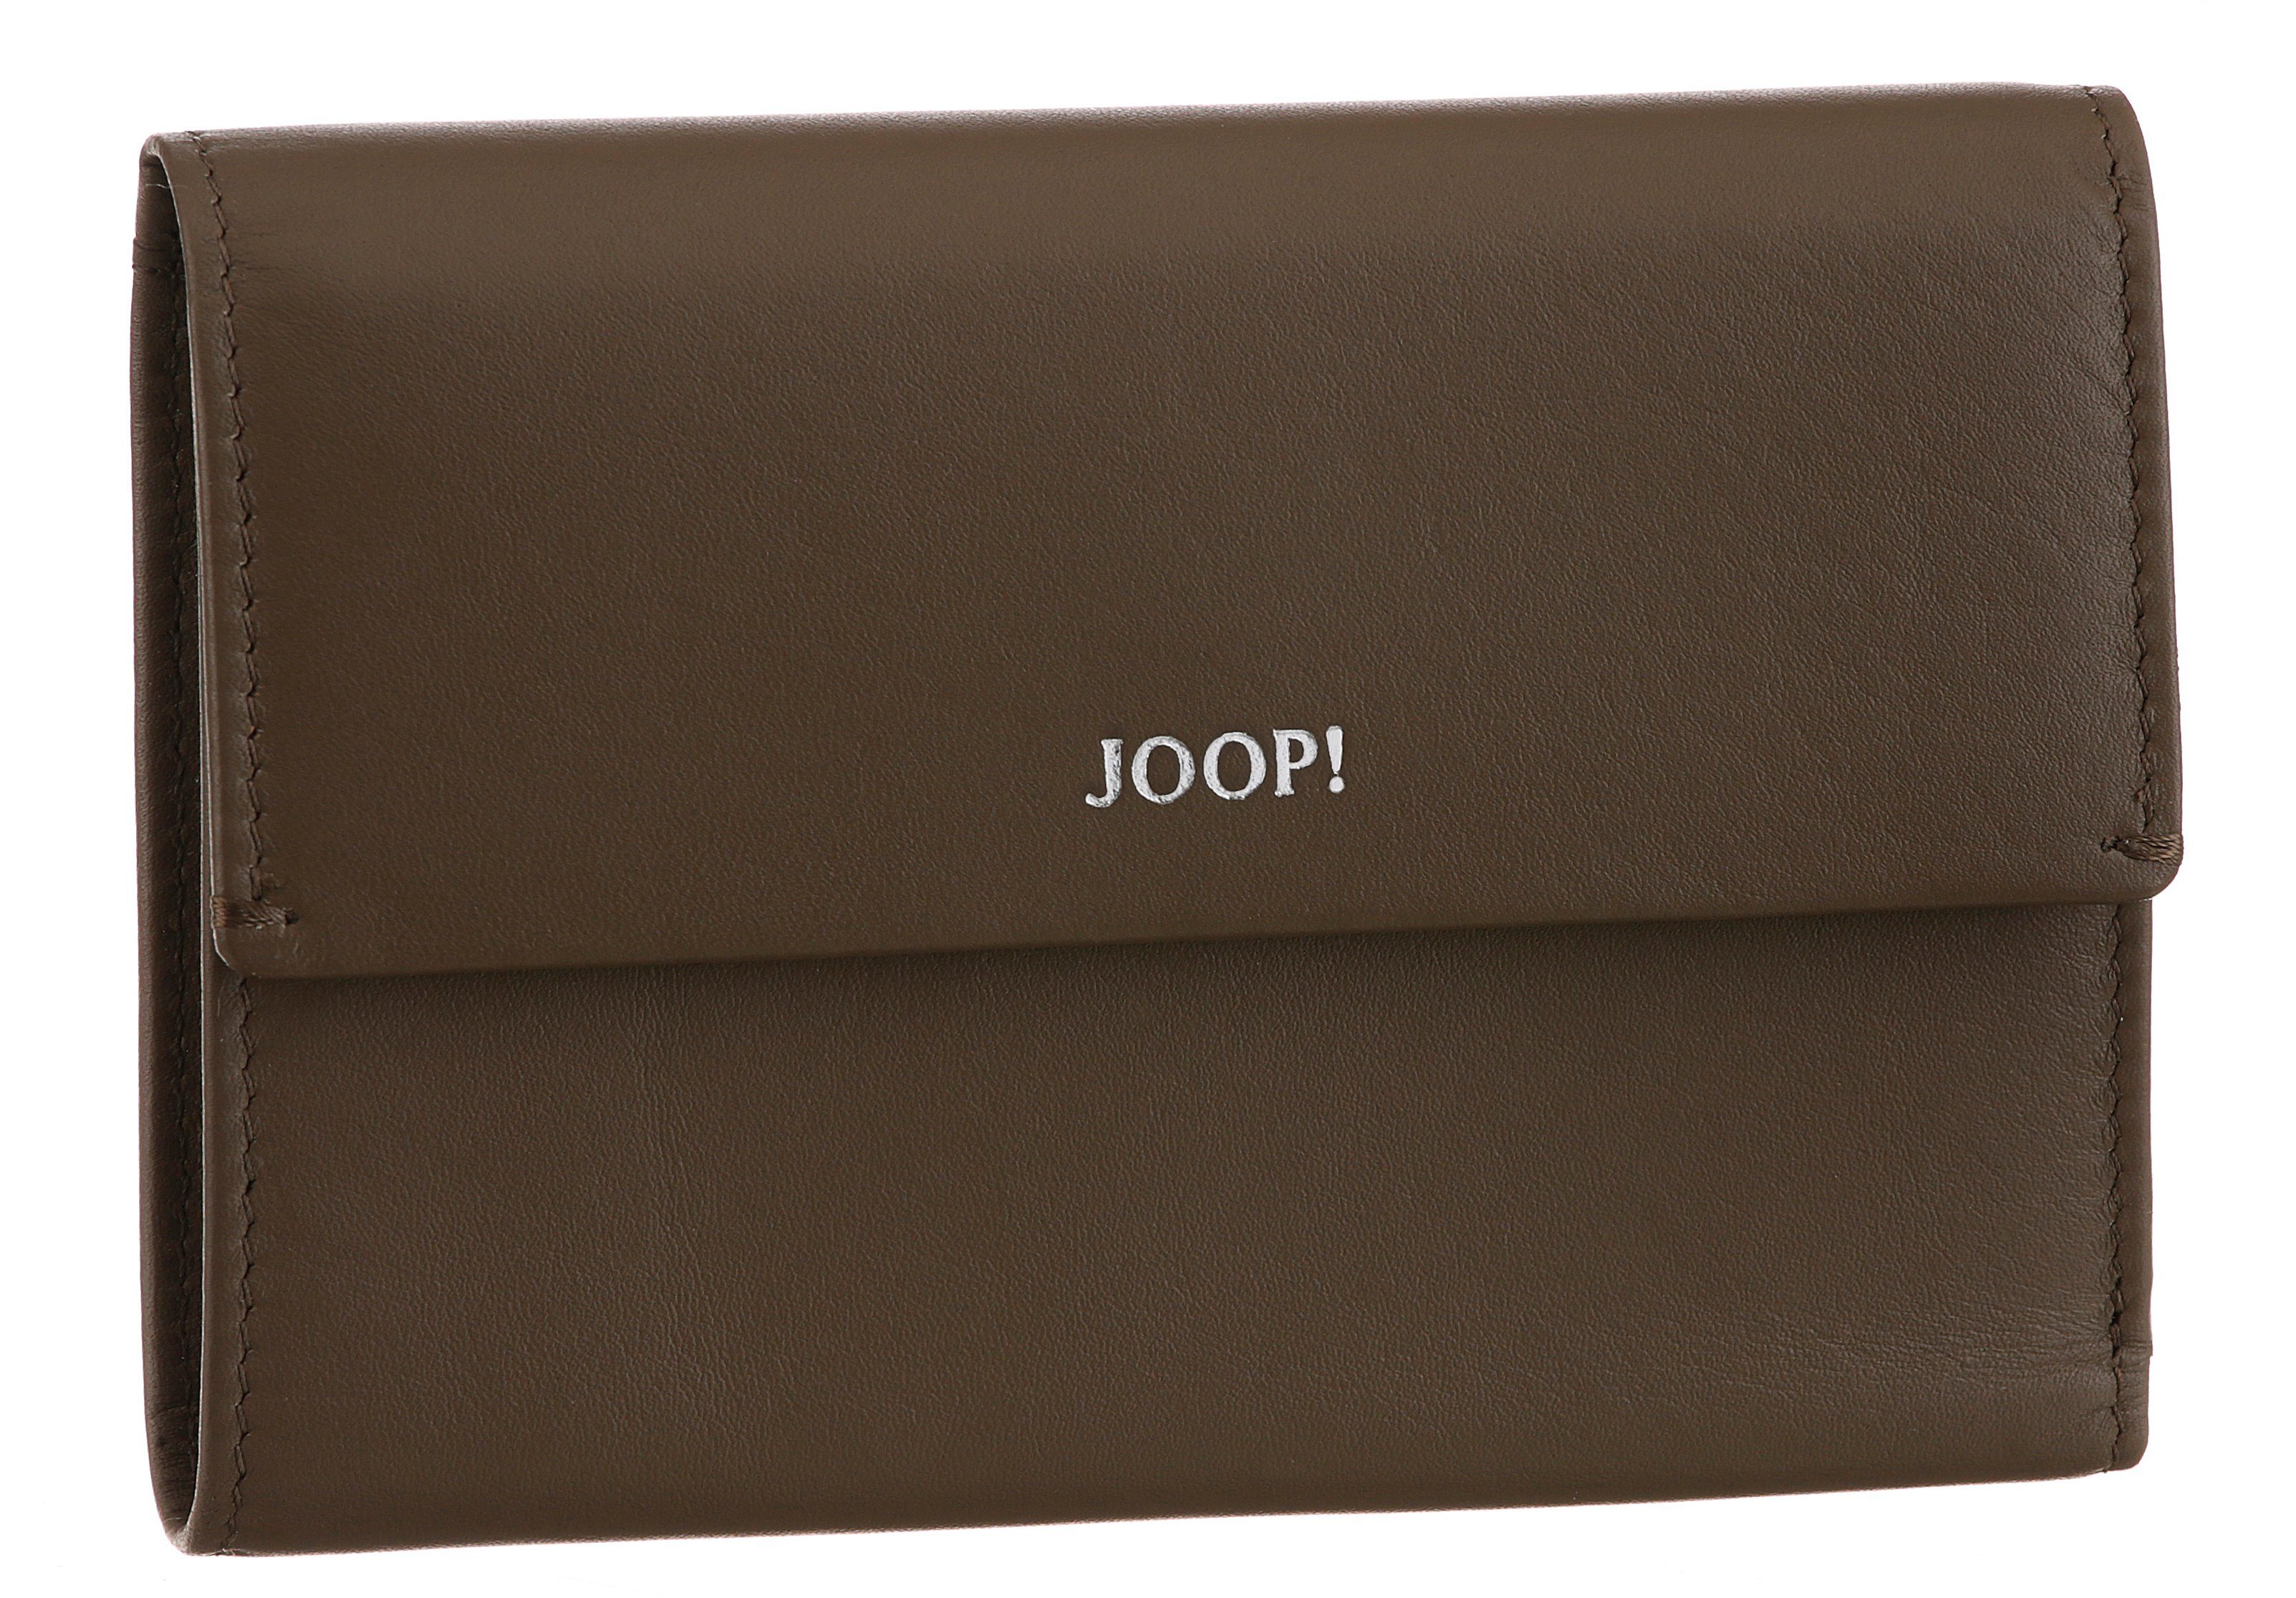 Joop! Geldbörse sofisticato dunkelbraun mh10f, cosma schlichtem Design 1.0 in purse